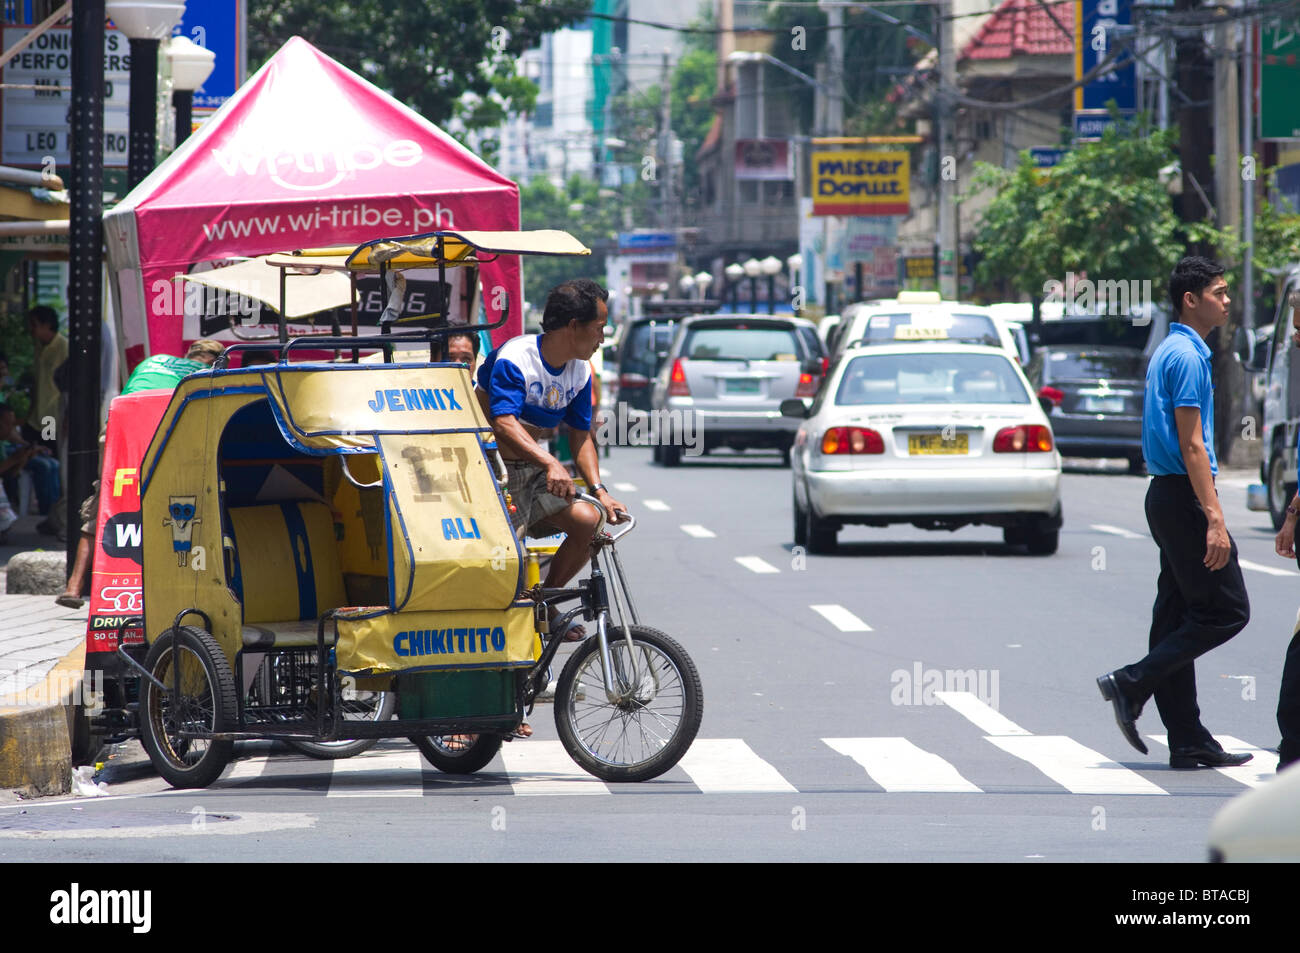 Streetscene del malato, un quartiere di Manila, la città capitale di phlippines Foto Stock